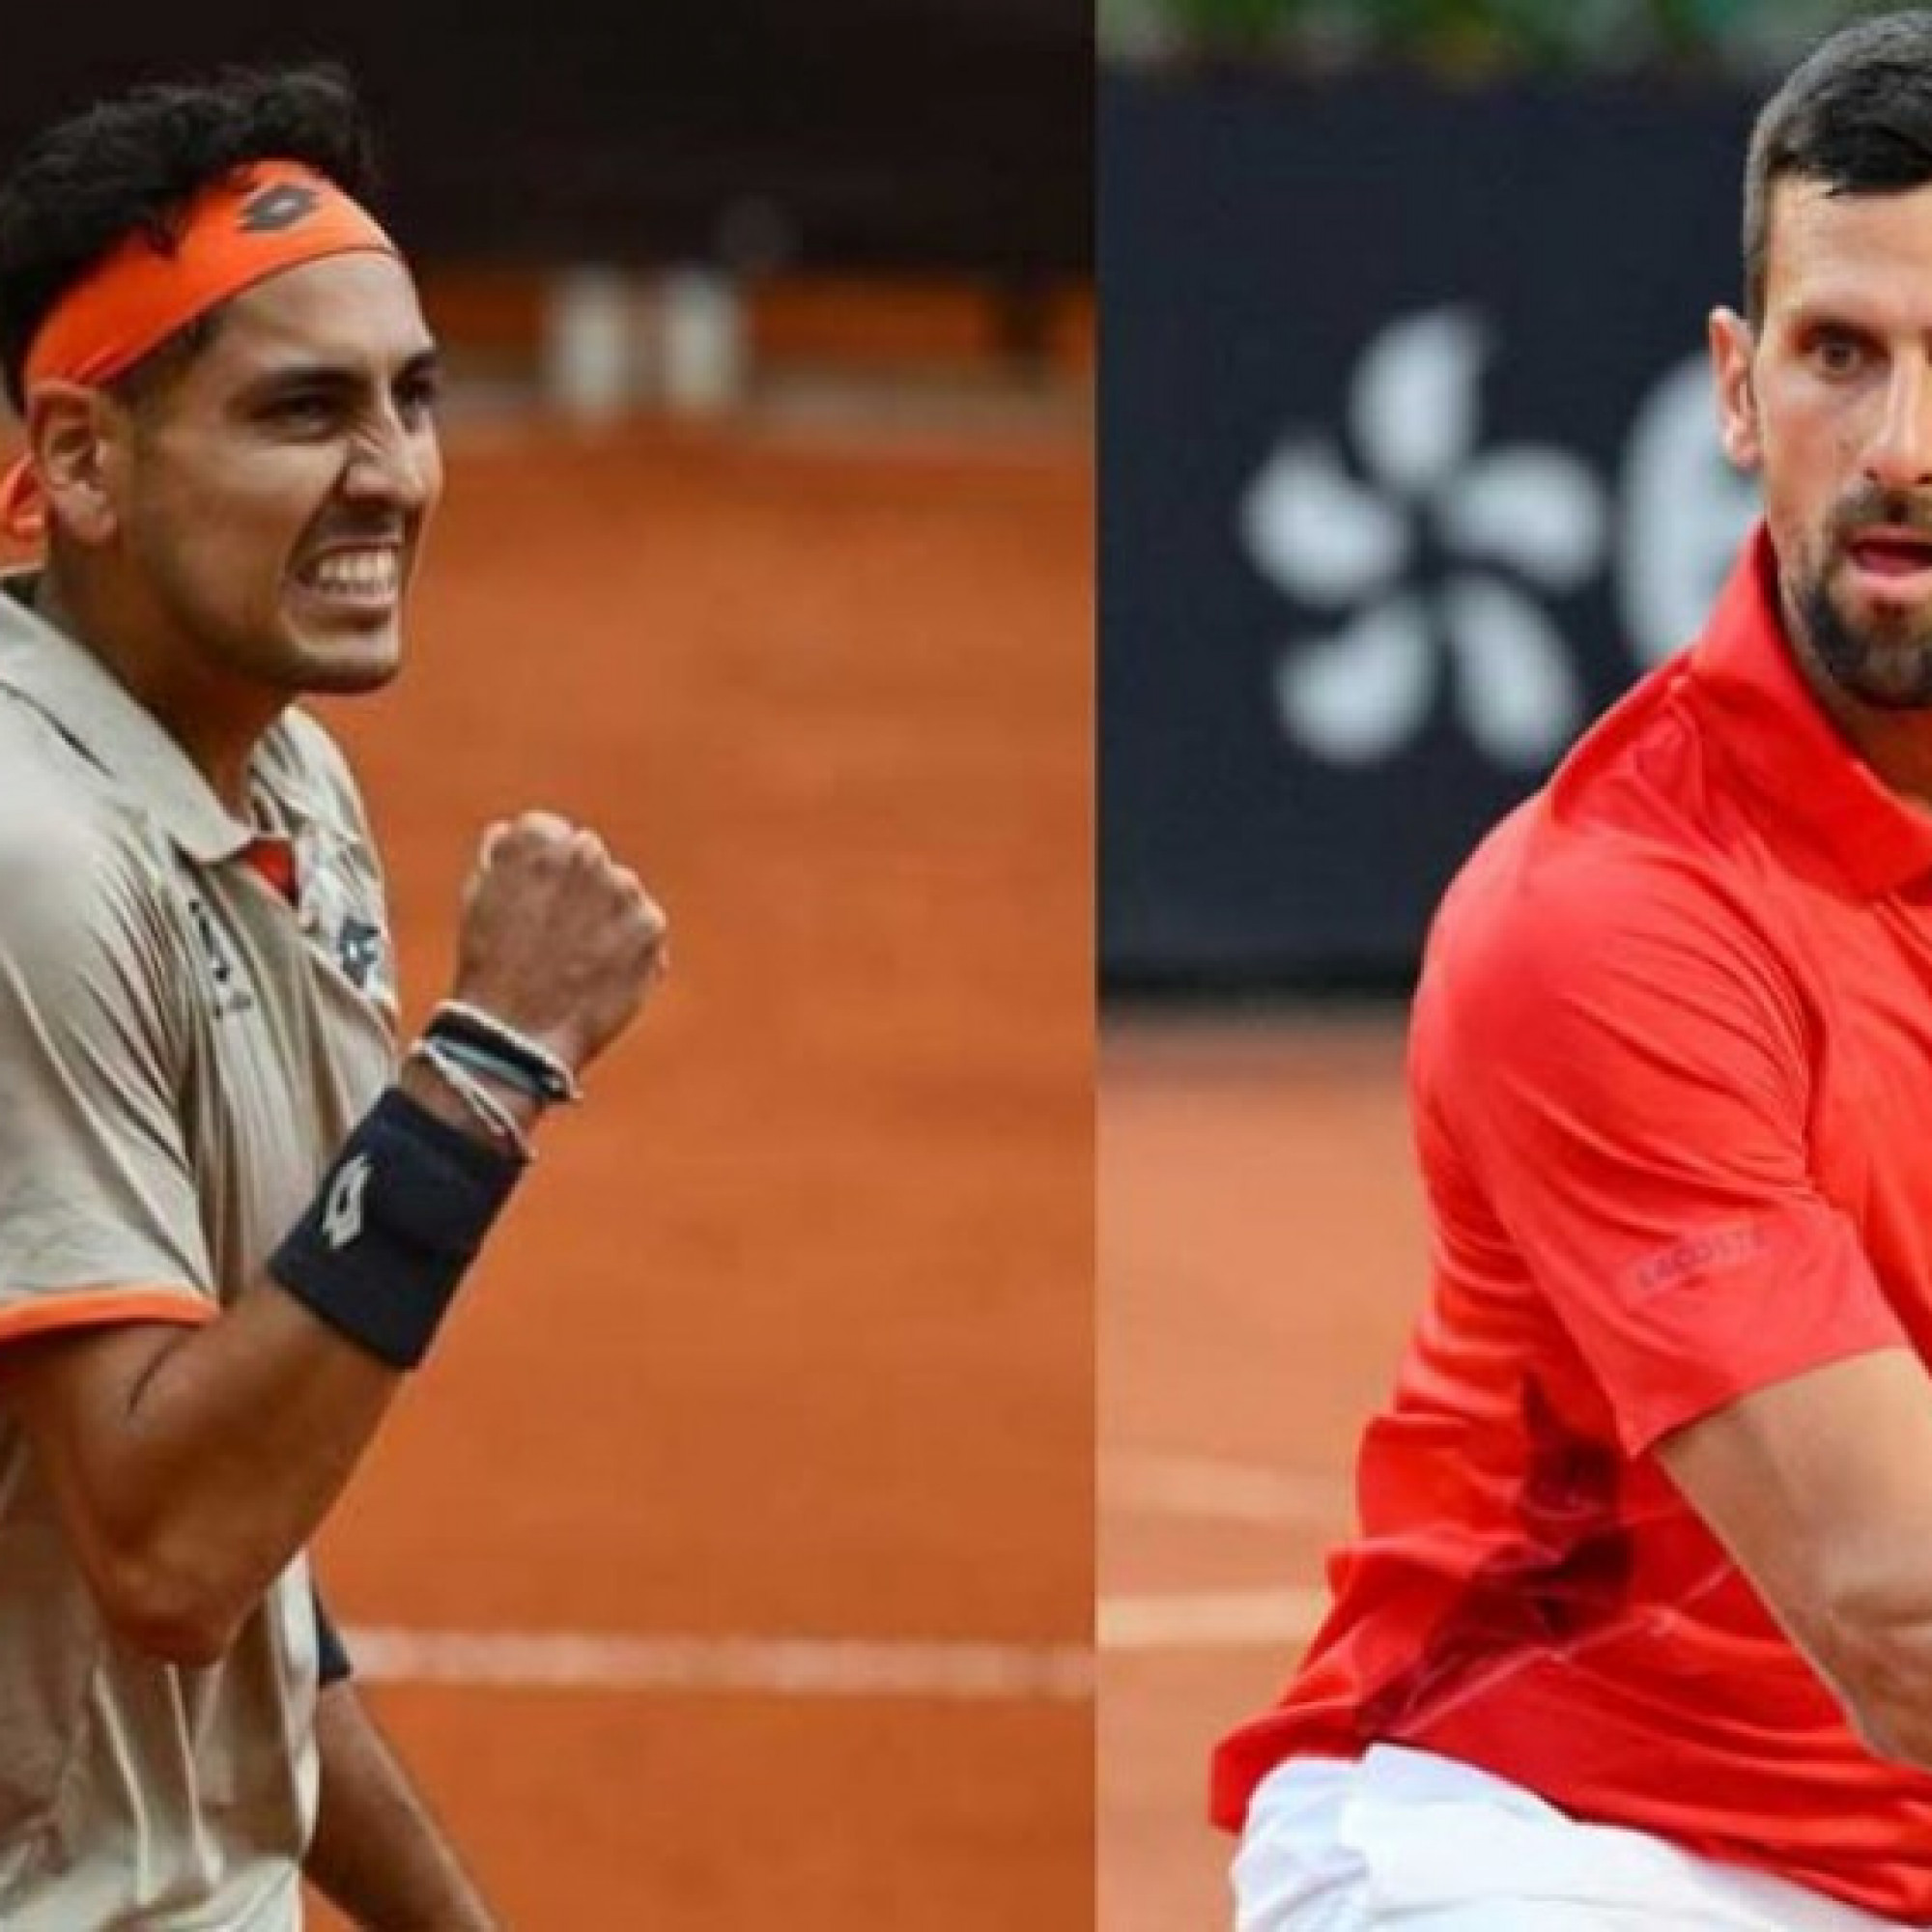  - Trực tiếp tennis Djokovic - Tabilo: Chênh lệch đẳng cấp (Rome Open)